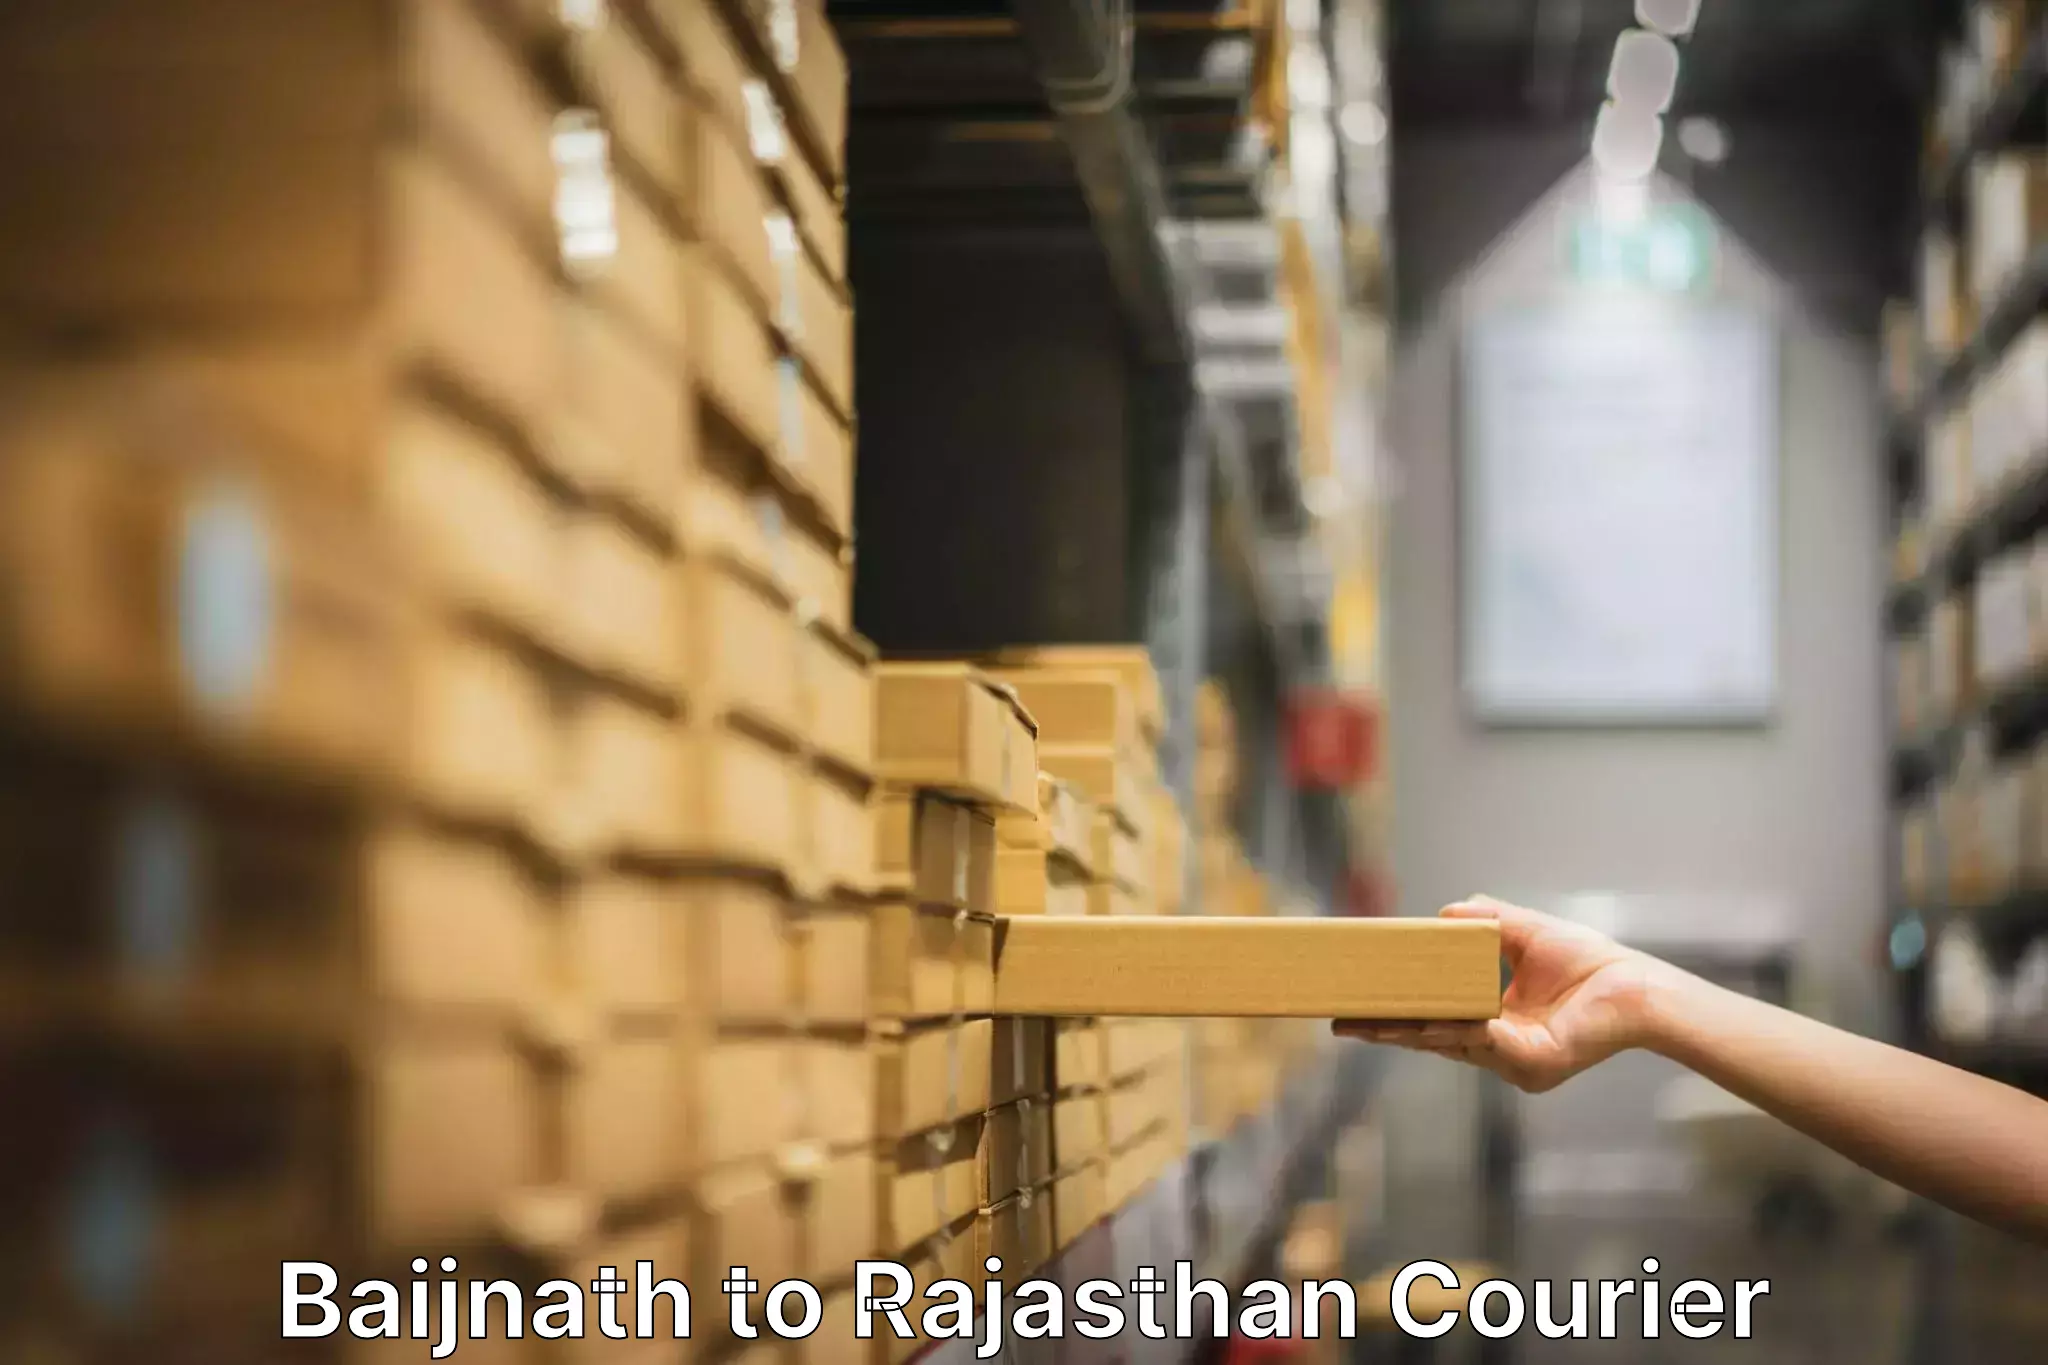 Expert moving and storage Baijnath to Pratapgarh Rajasthan